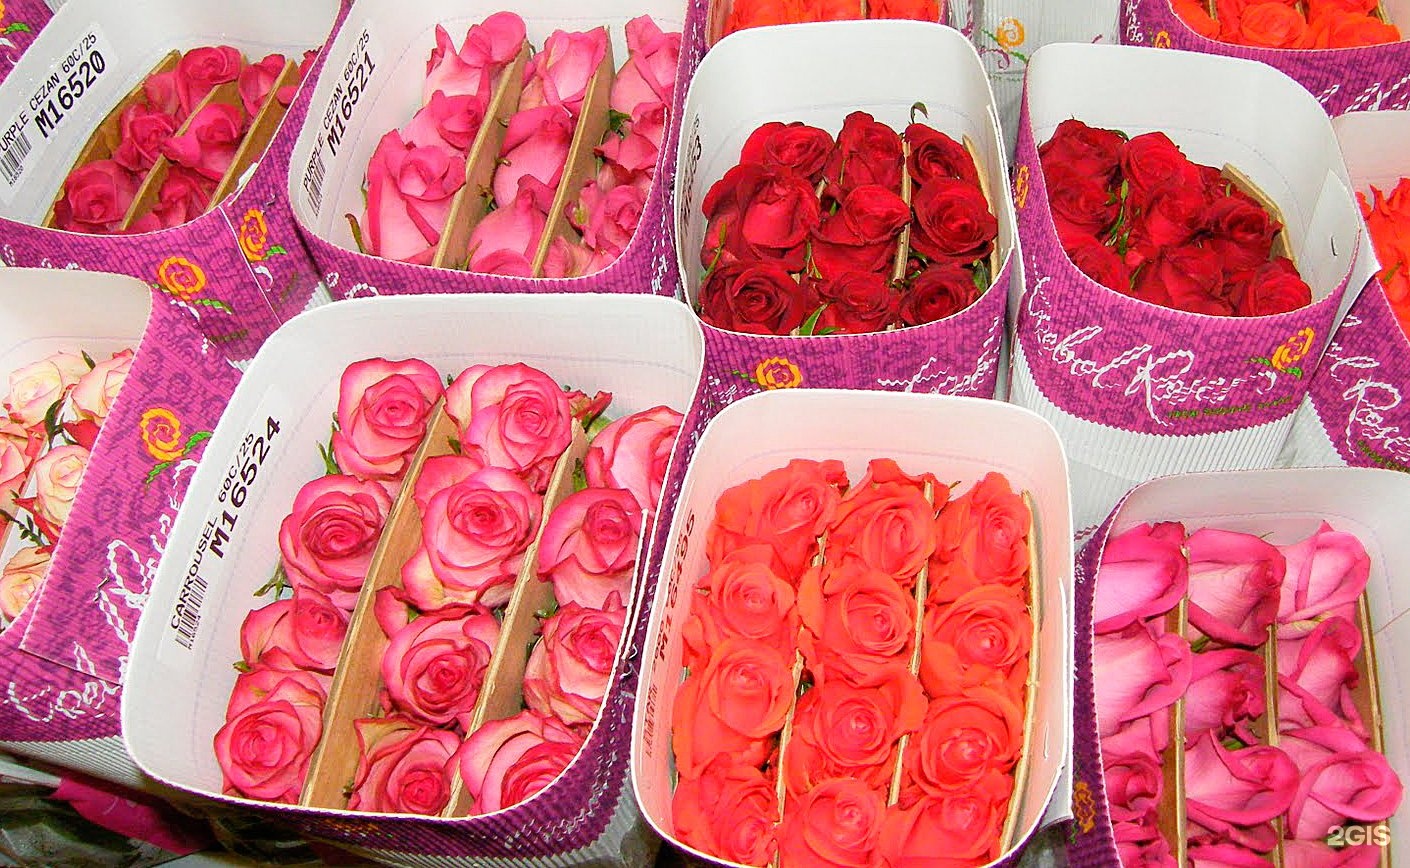 Купить розы от производителя. Пачка роз. Оптовая упаковка роз.